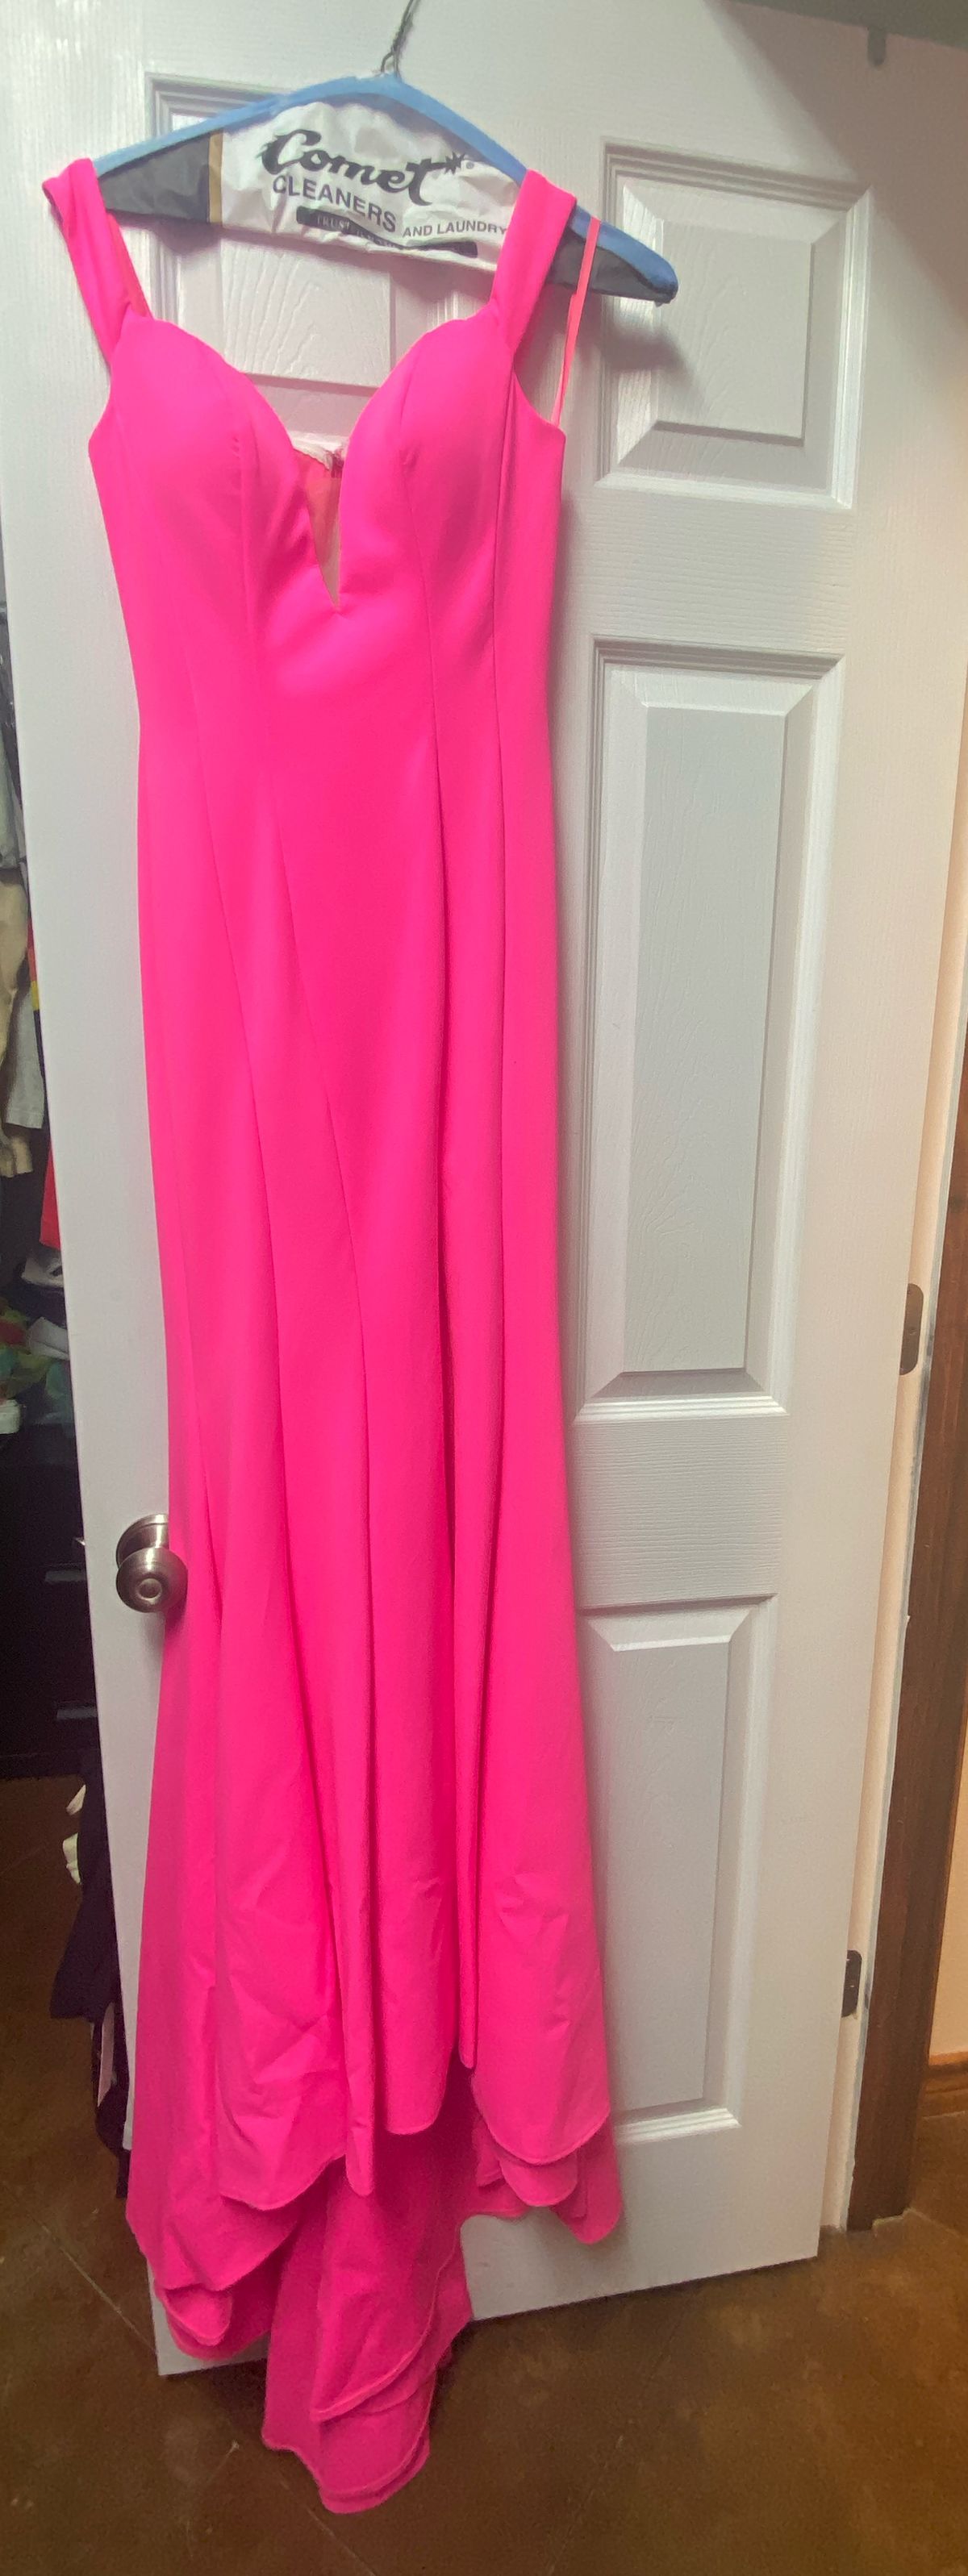 Size 0 Prom Off The Shoulder Hot Pink Side Slit Dress on Queenly